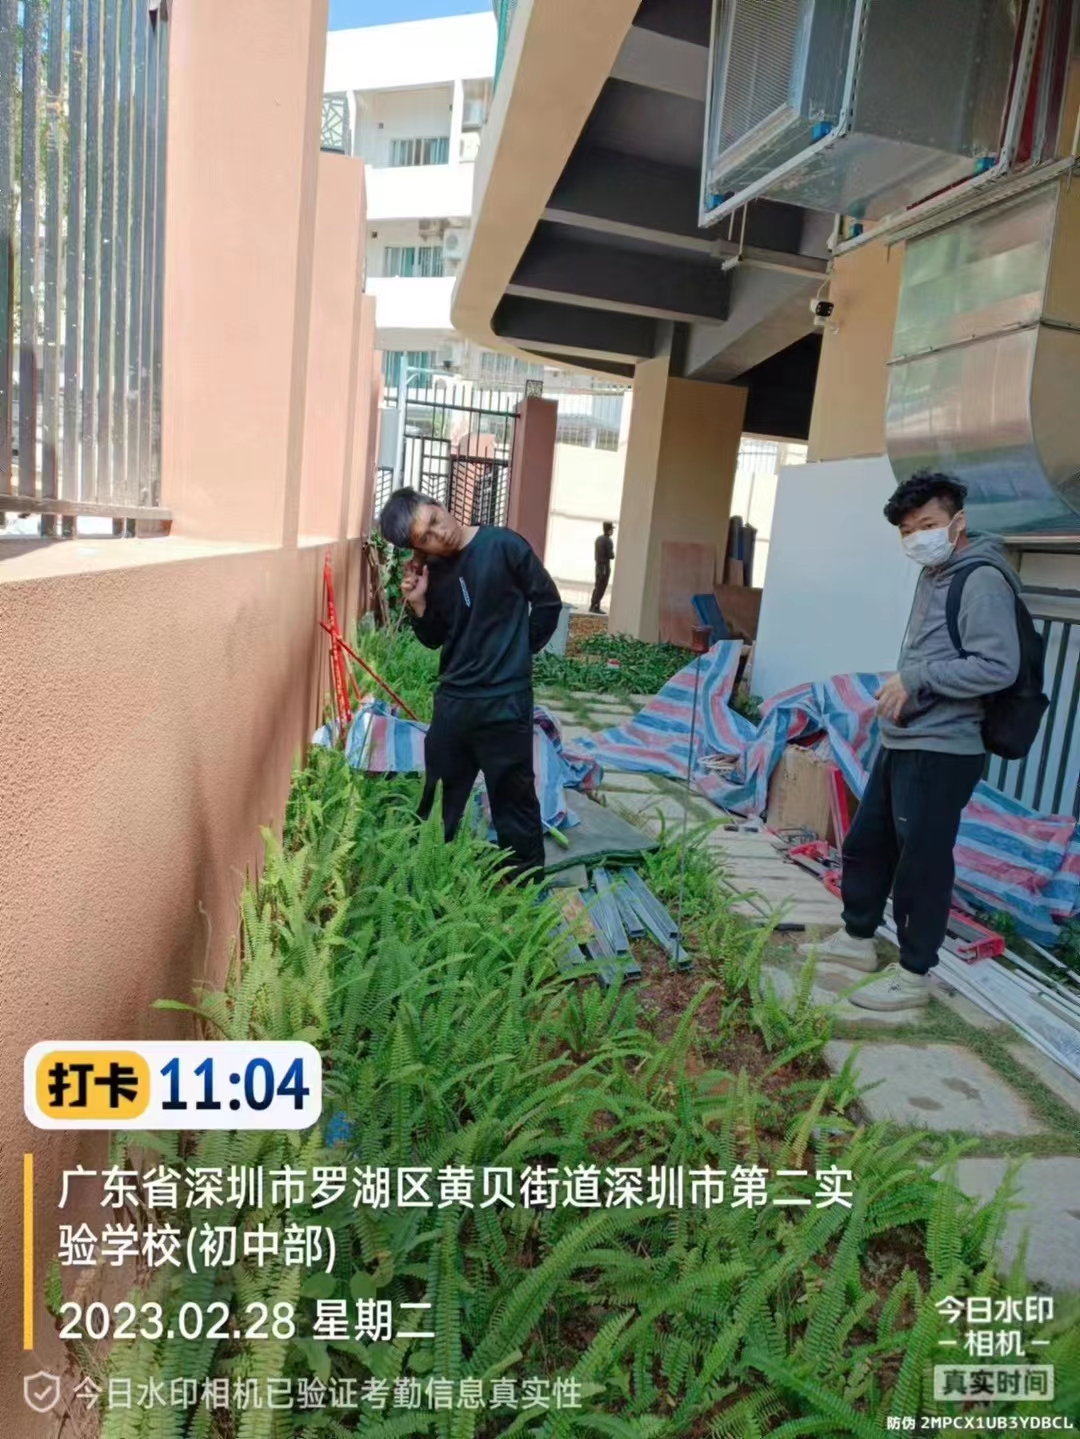 漏水檢測工程在廣東深圳羅湖區黃貝街道第二實驗學校進行